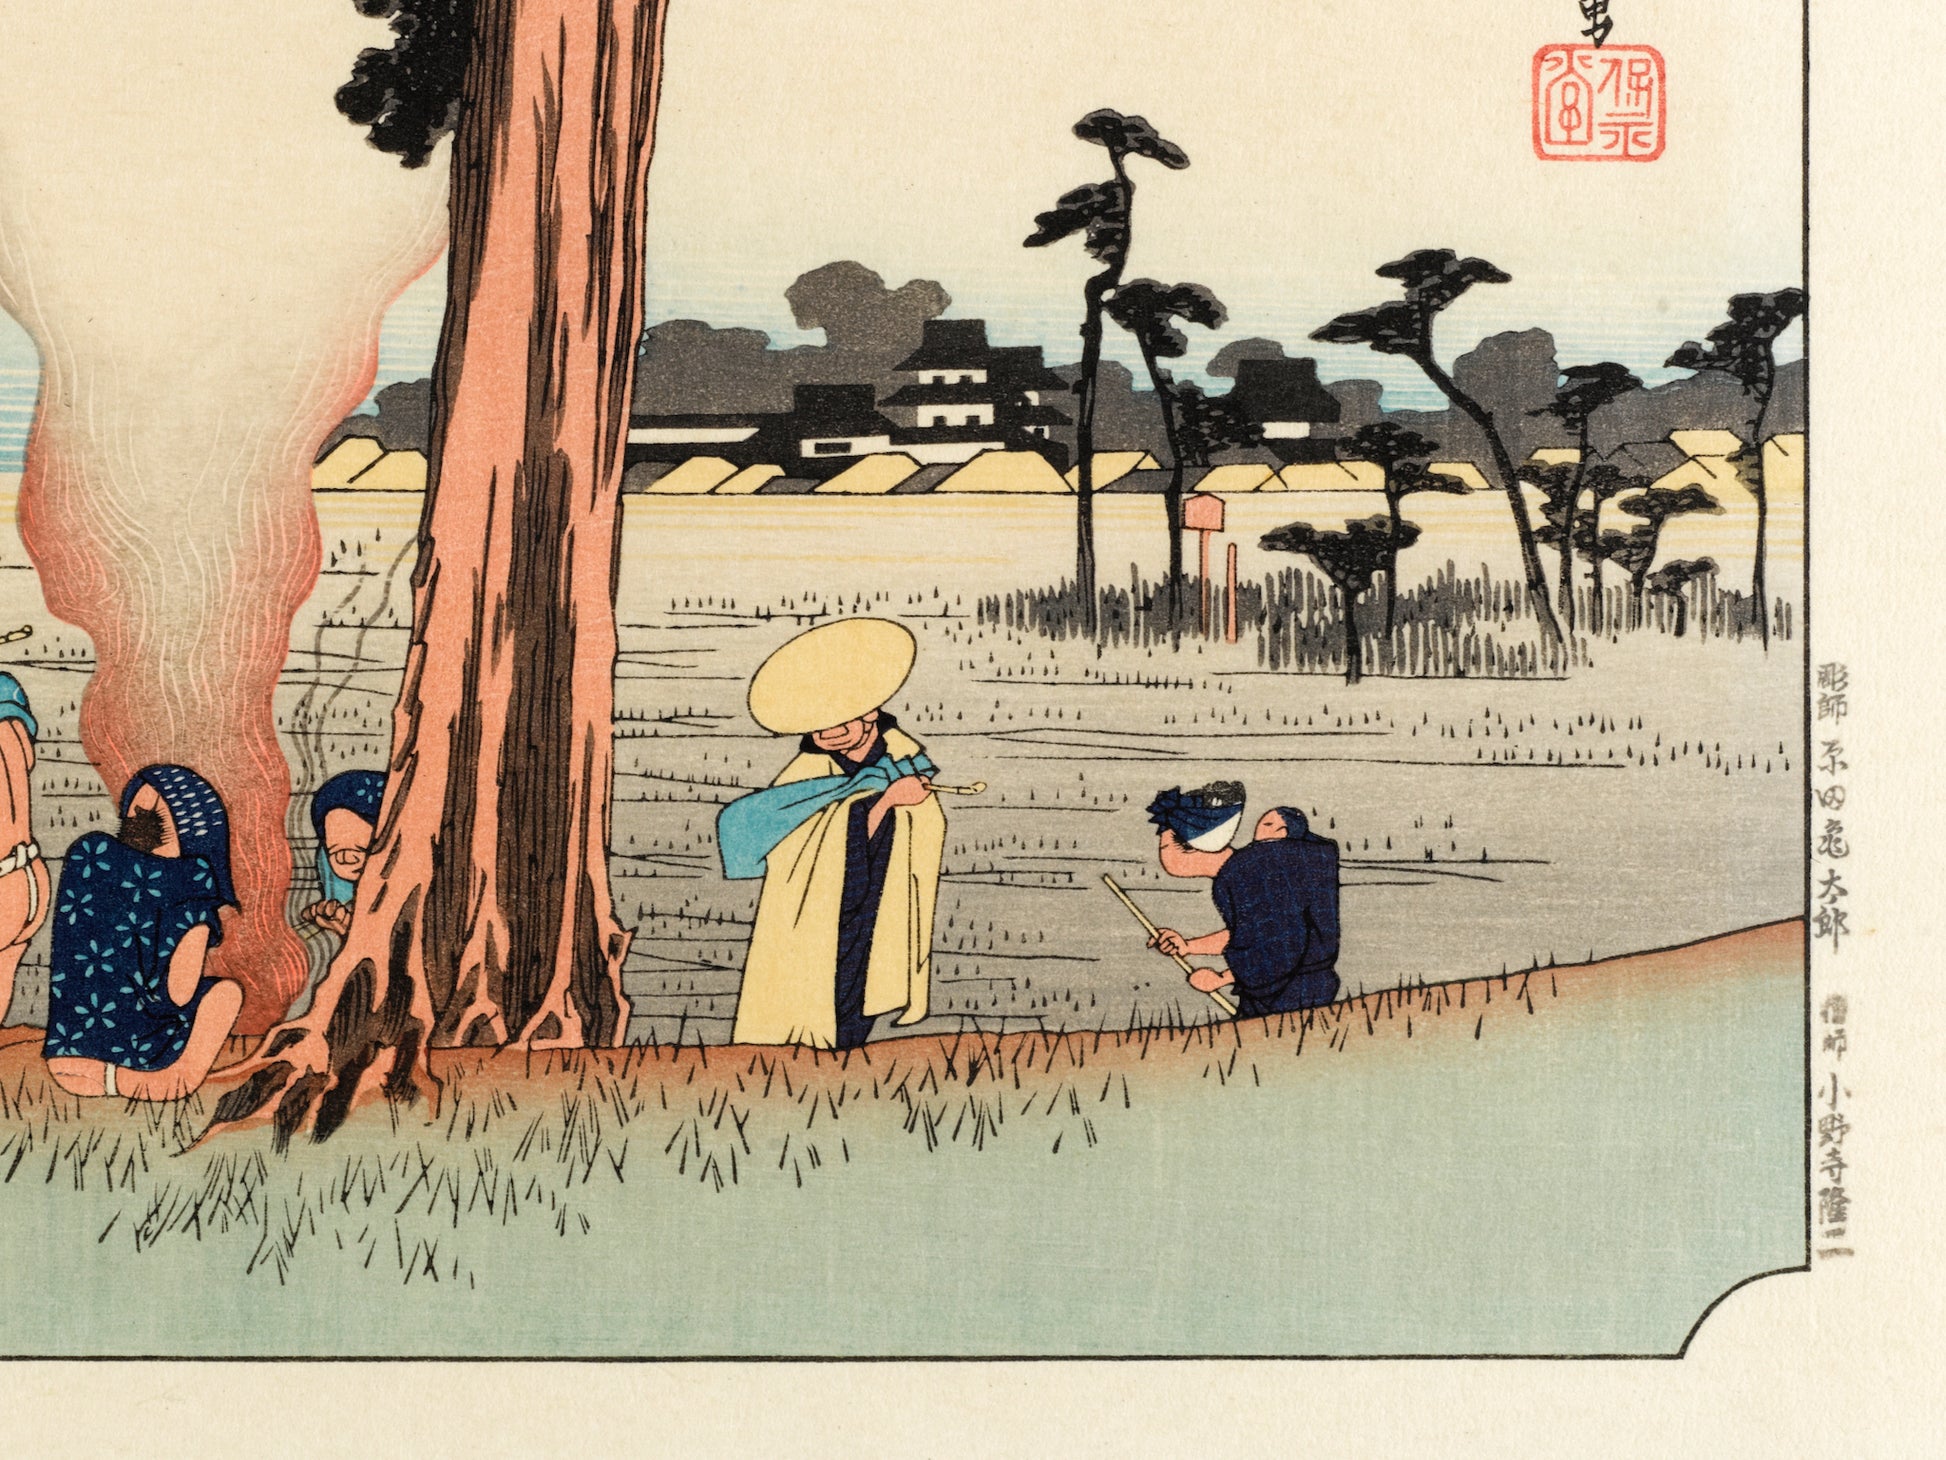 estampe japonaise de hiroshige grand tokaido des voyageurs font halte sous un pin, une mère portant son enfant sur le dos